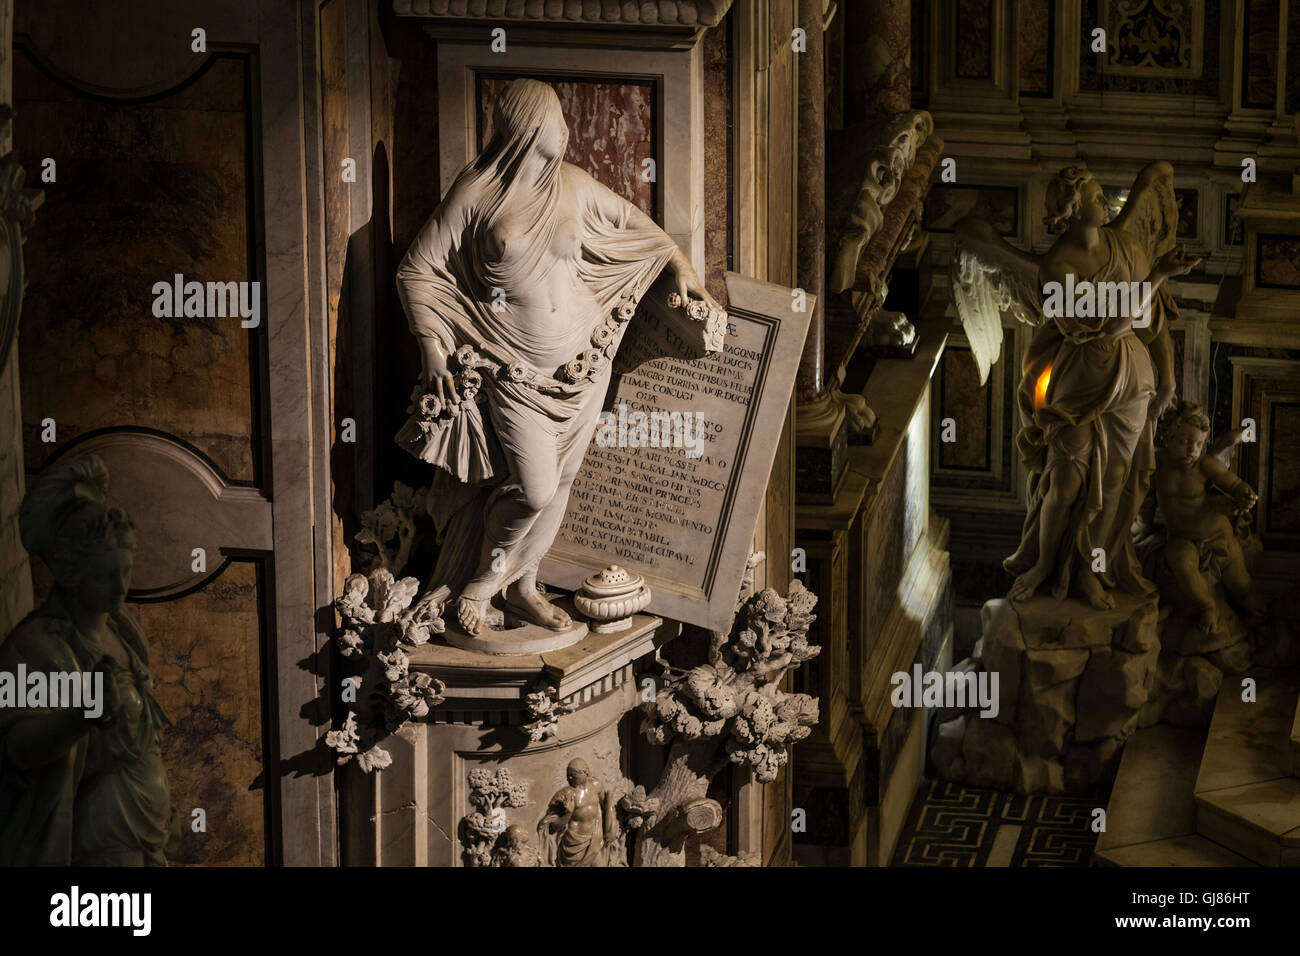 Italien, Neapel: Cristo Velato im Palazzo Quartieri. Verschleierte Chris renommierten Ovr für die bemerkenswerte Gewebe-Qualität von der Stockfoto